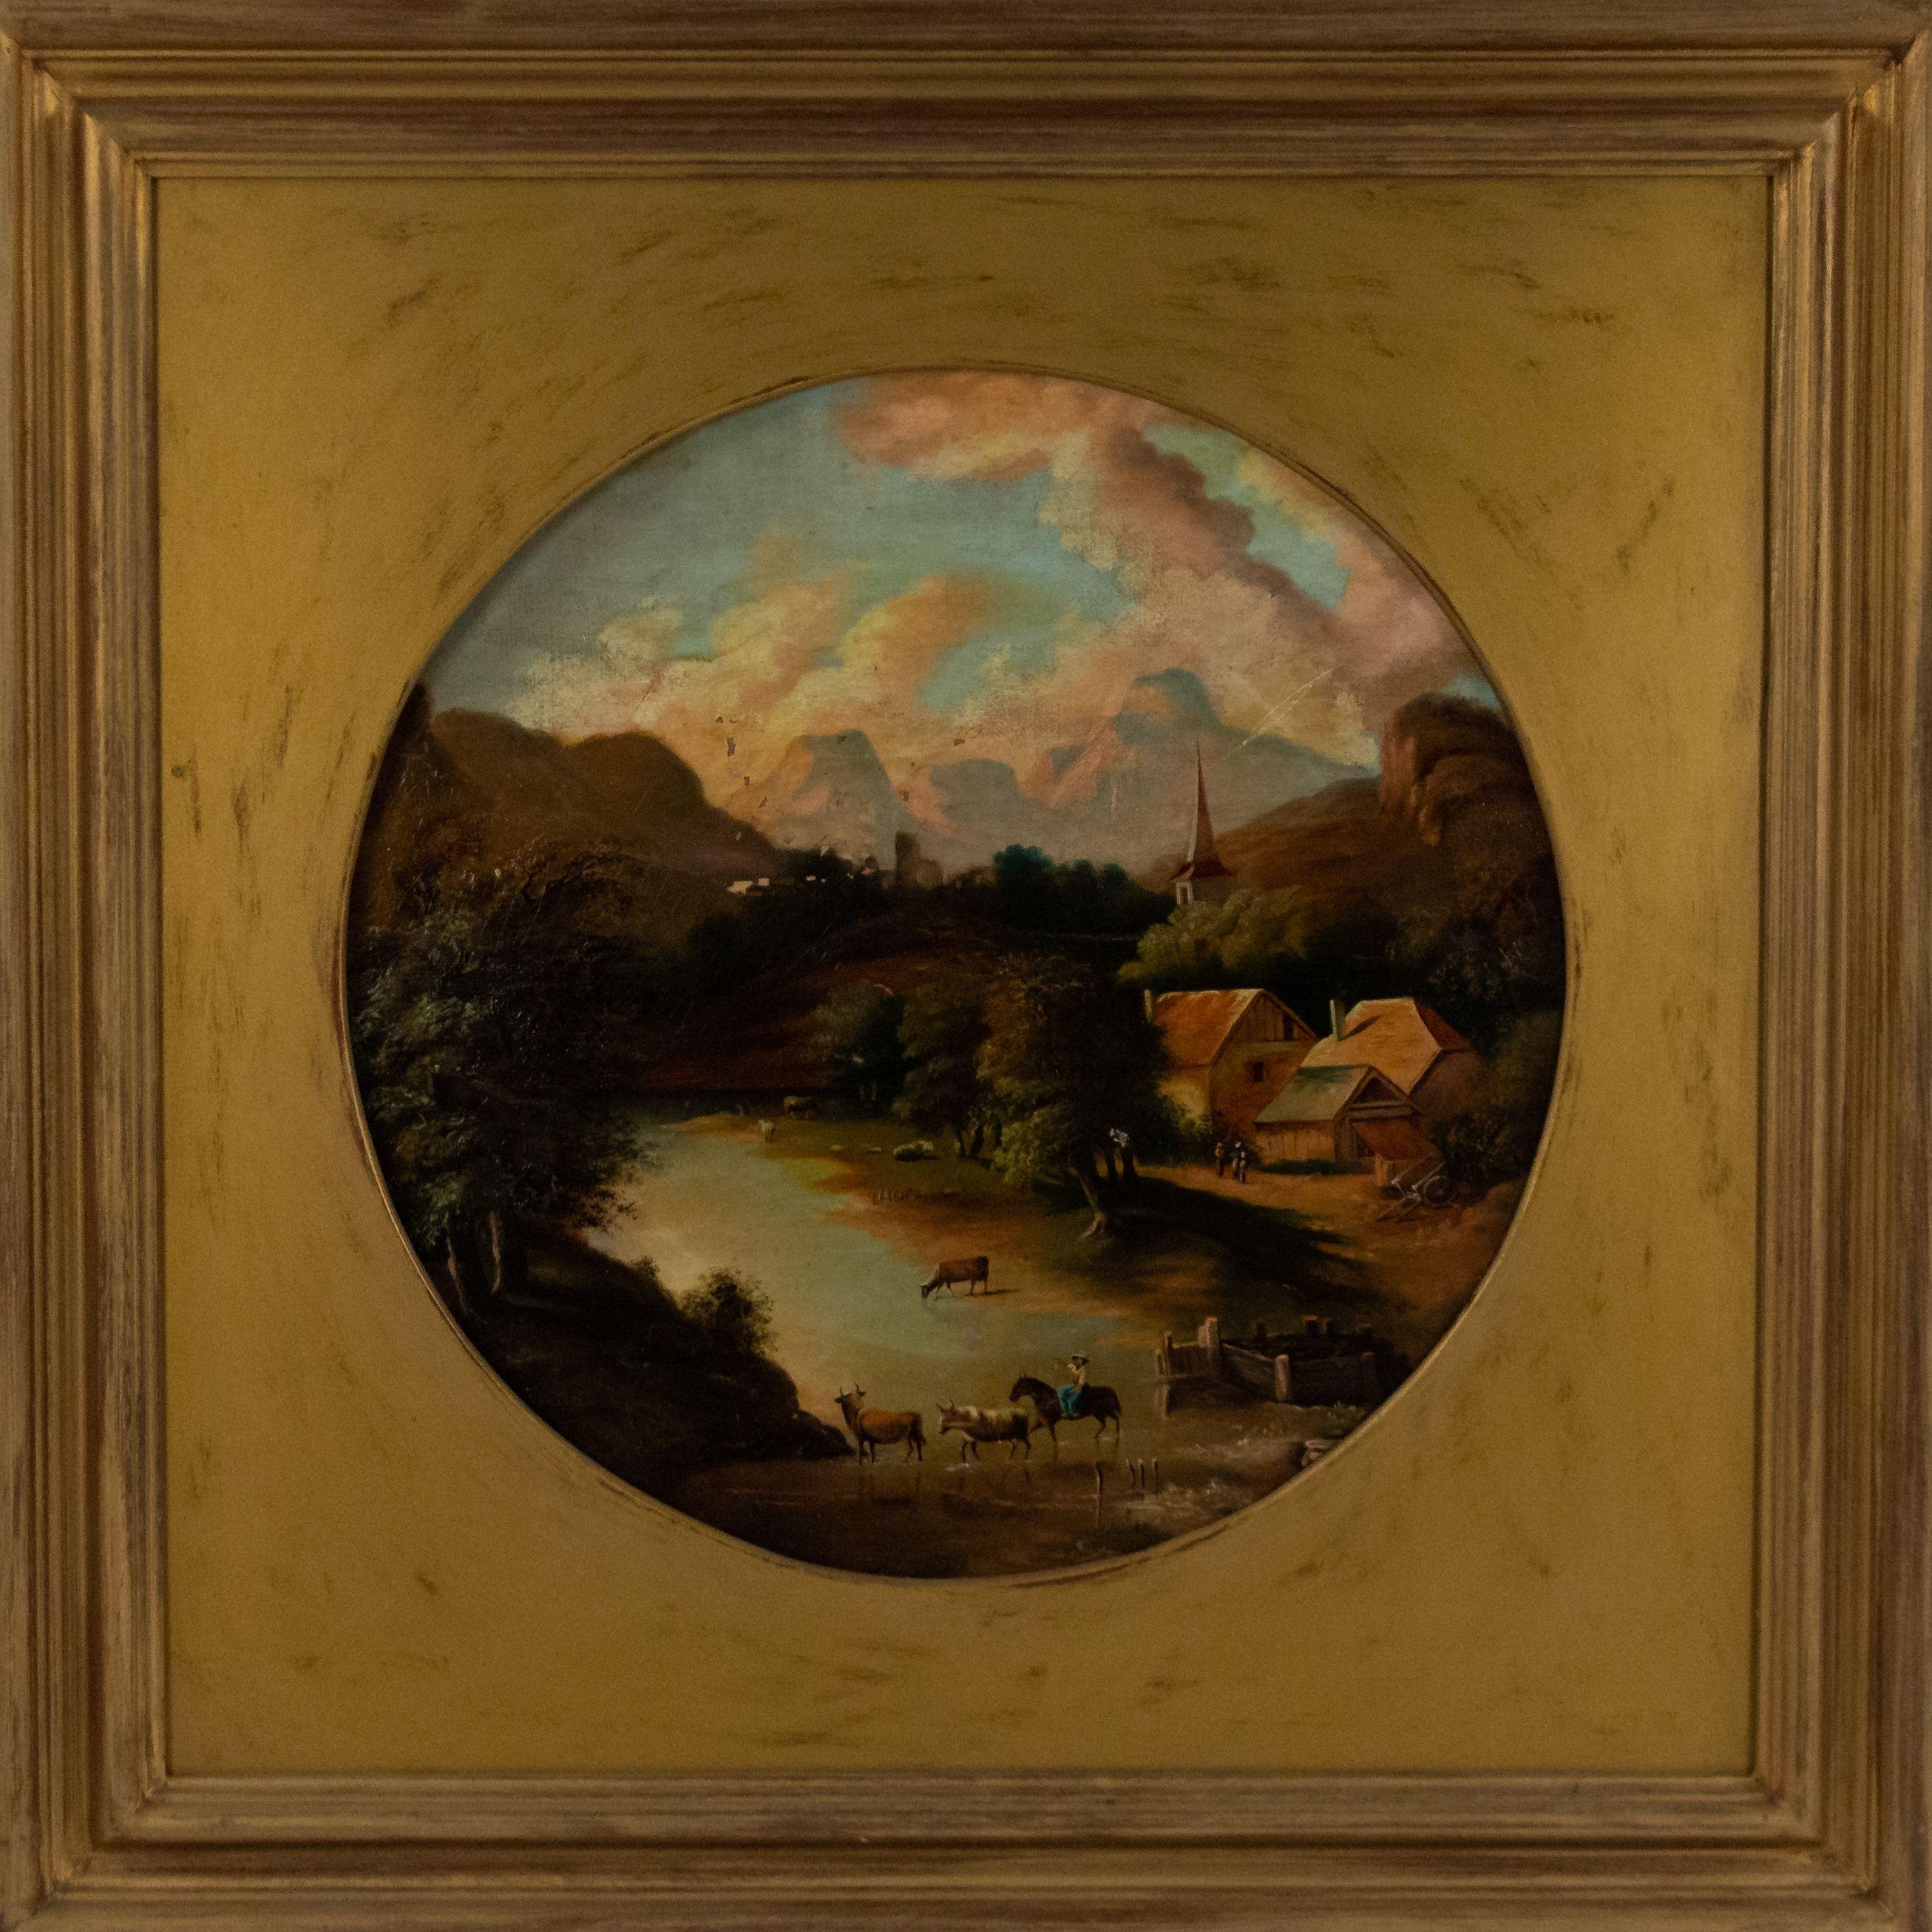 Paire de peintures à l'huile de paysages rondes de l'époque victorienne américaine avec des scènes pastorales dans des cadres carrés dorés.